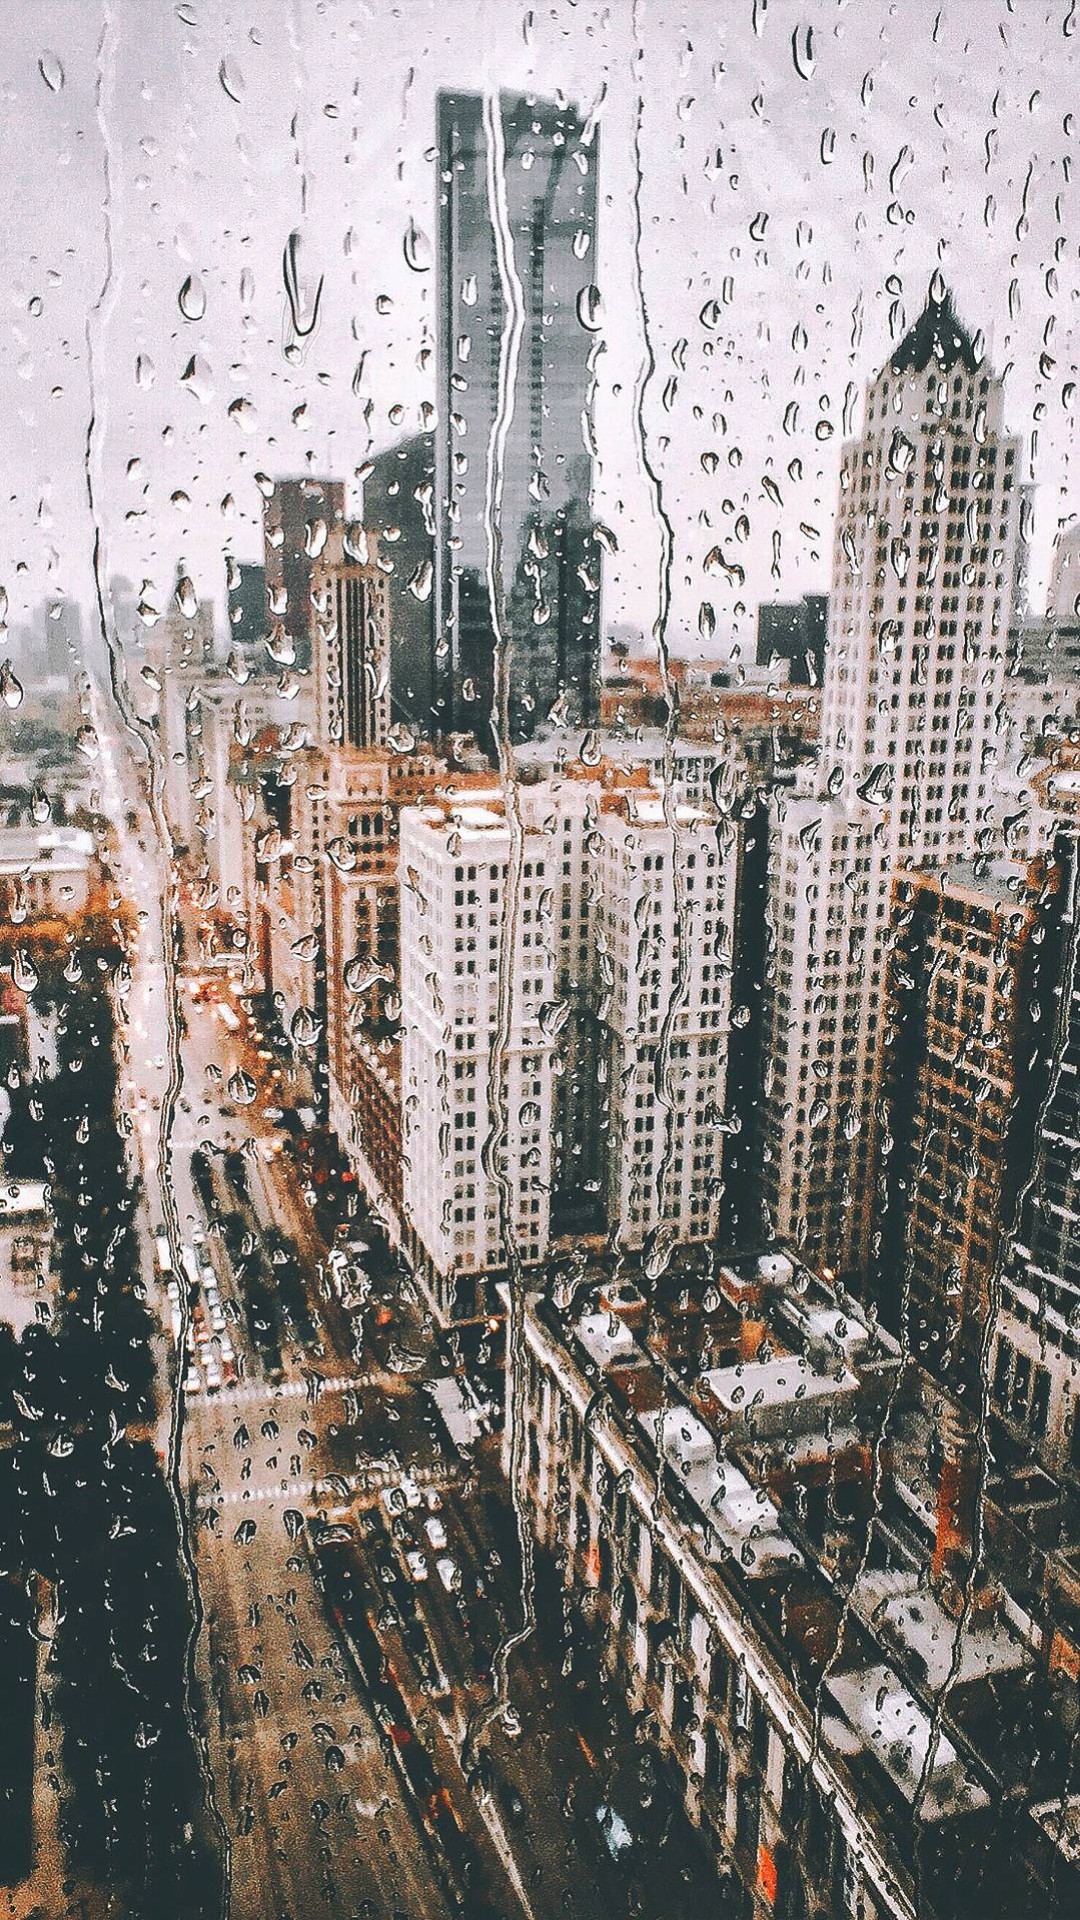 City Rain Wallpapers - Top 35 Best City Rain Wallpapers Download